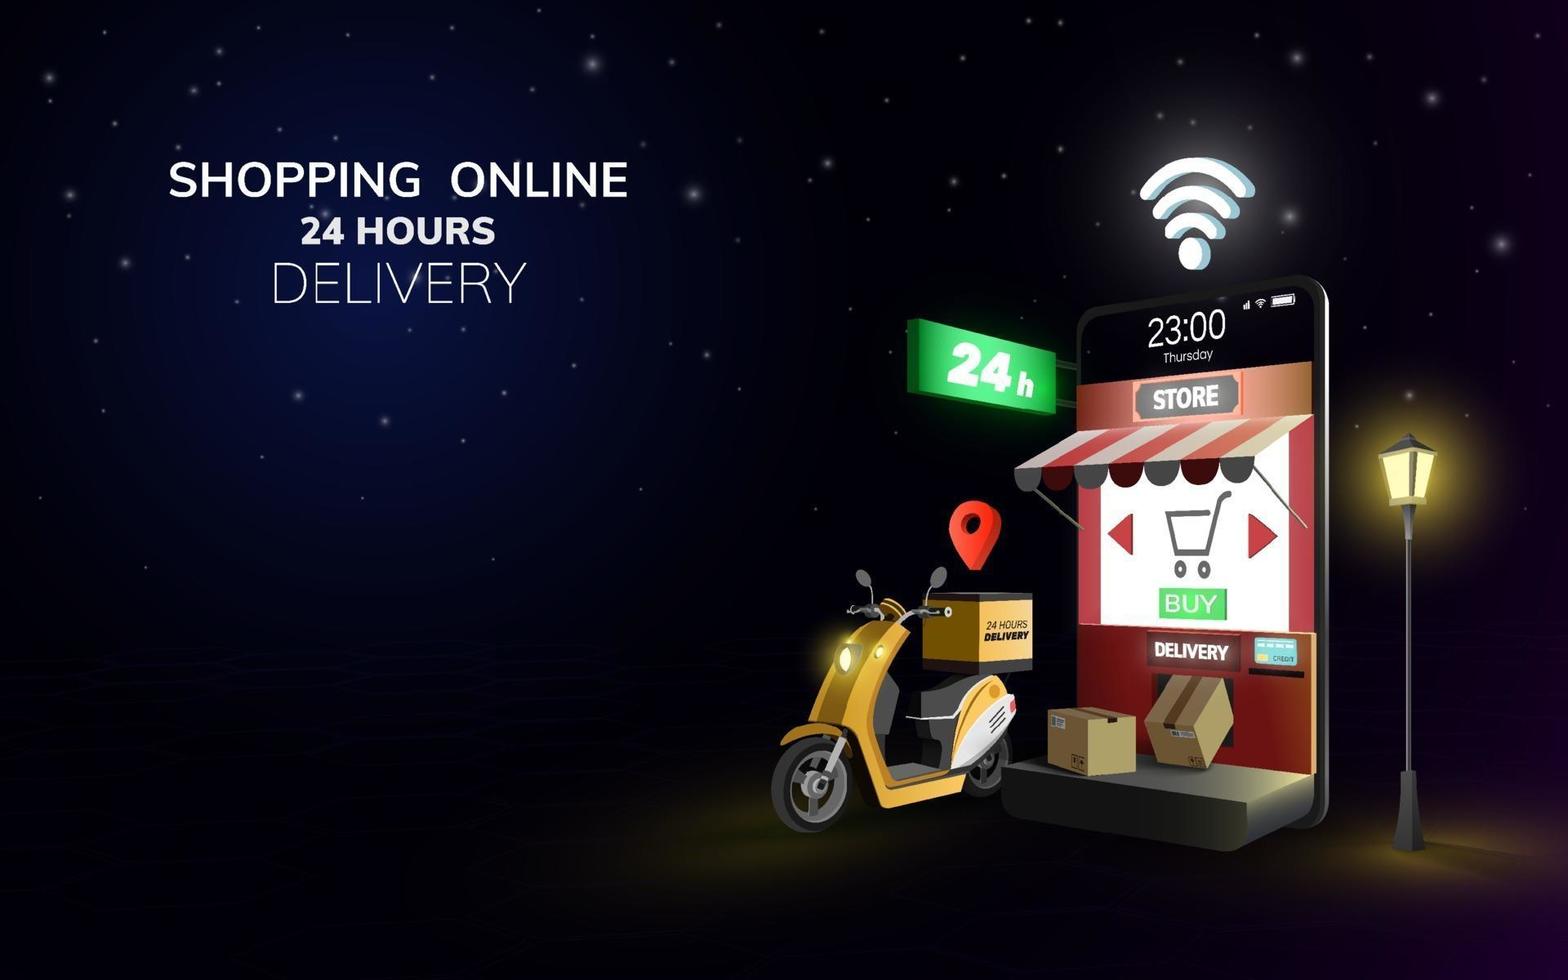 Livraison mondiale en ligne numérique sur scooter avec téléphone mobile au concept de fond de nuit pour l'expédition de nourriture de livraison 24 heures vecteur